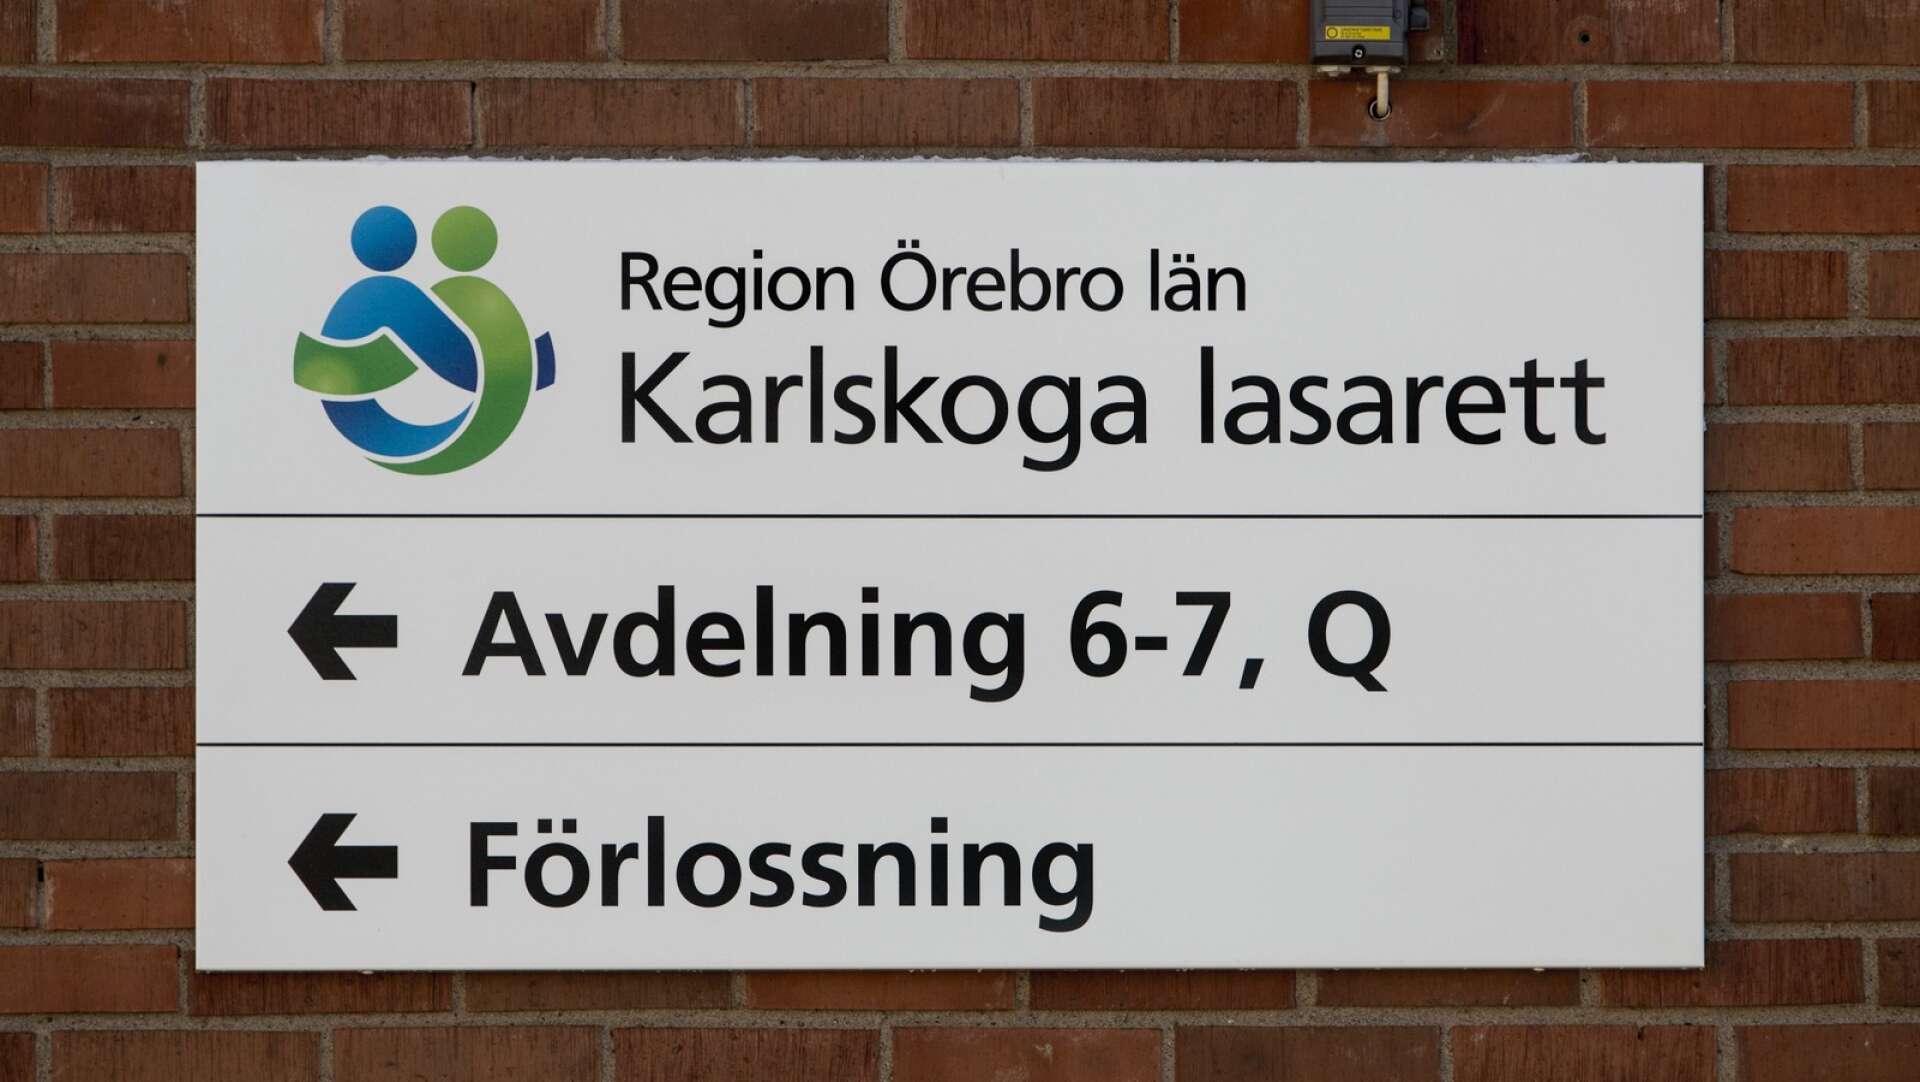 Förhoppningens låga tänds när regionen stänger upphandlingen och arbetar för att återuppta förlossningen i Karlskoga i egen regi.